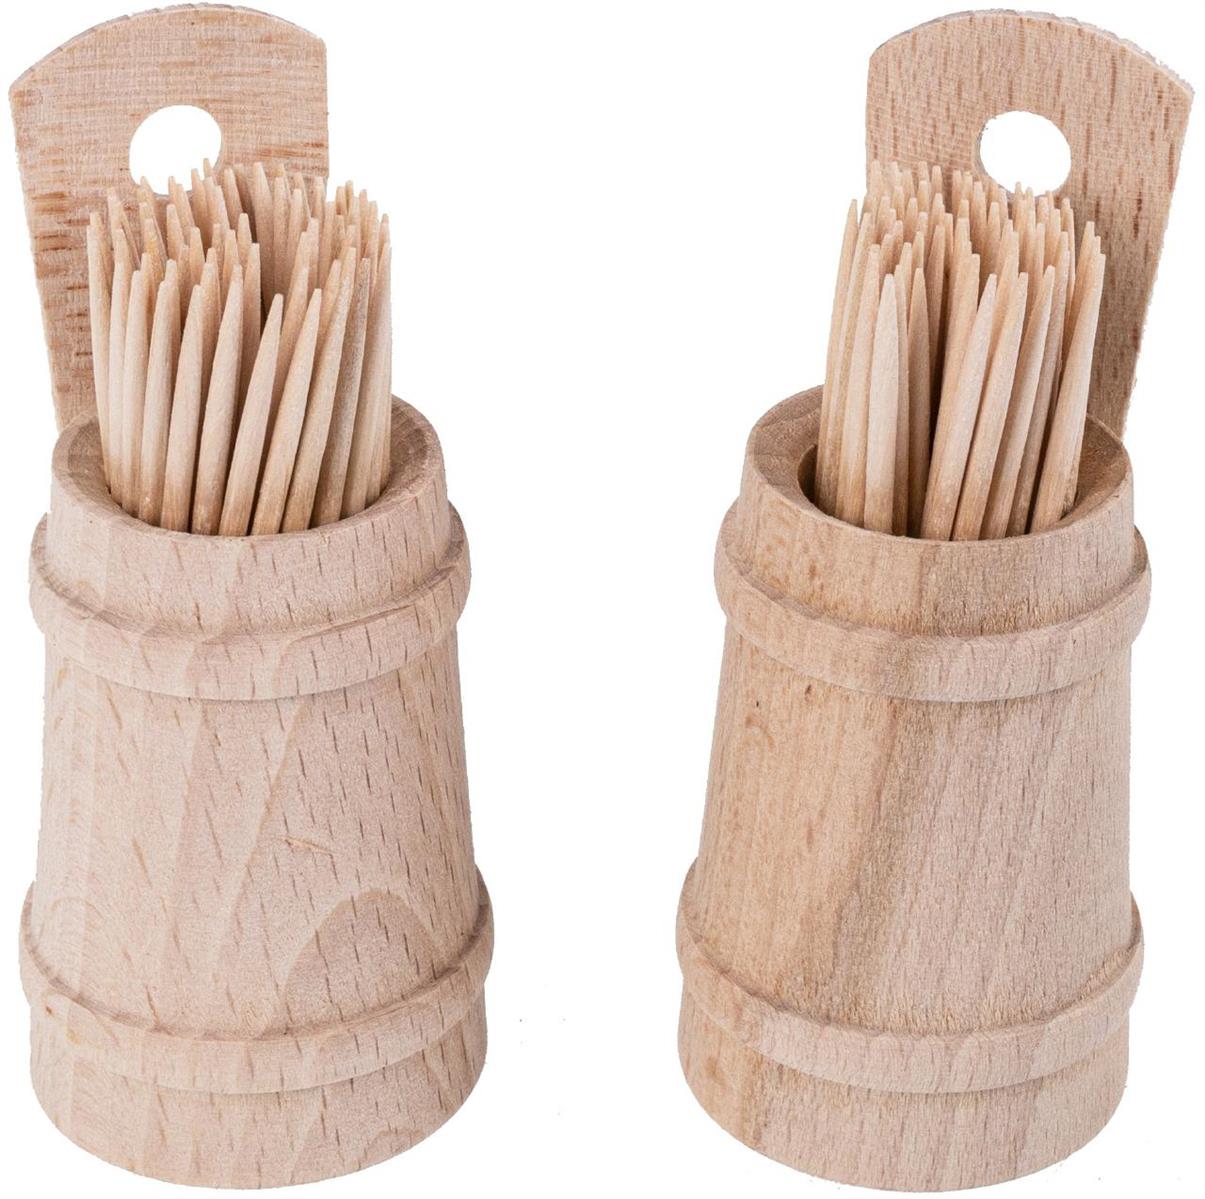 Hochwertiges Zahnstocher-Fässchen aus Buchenholz inklusive Zahnstocher - praktische Größe (8,5 x 4 cm)